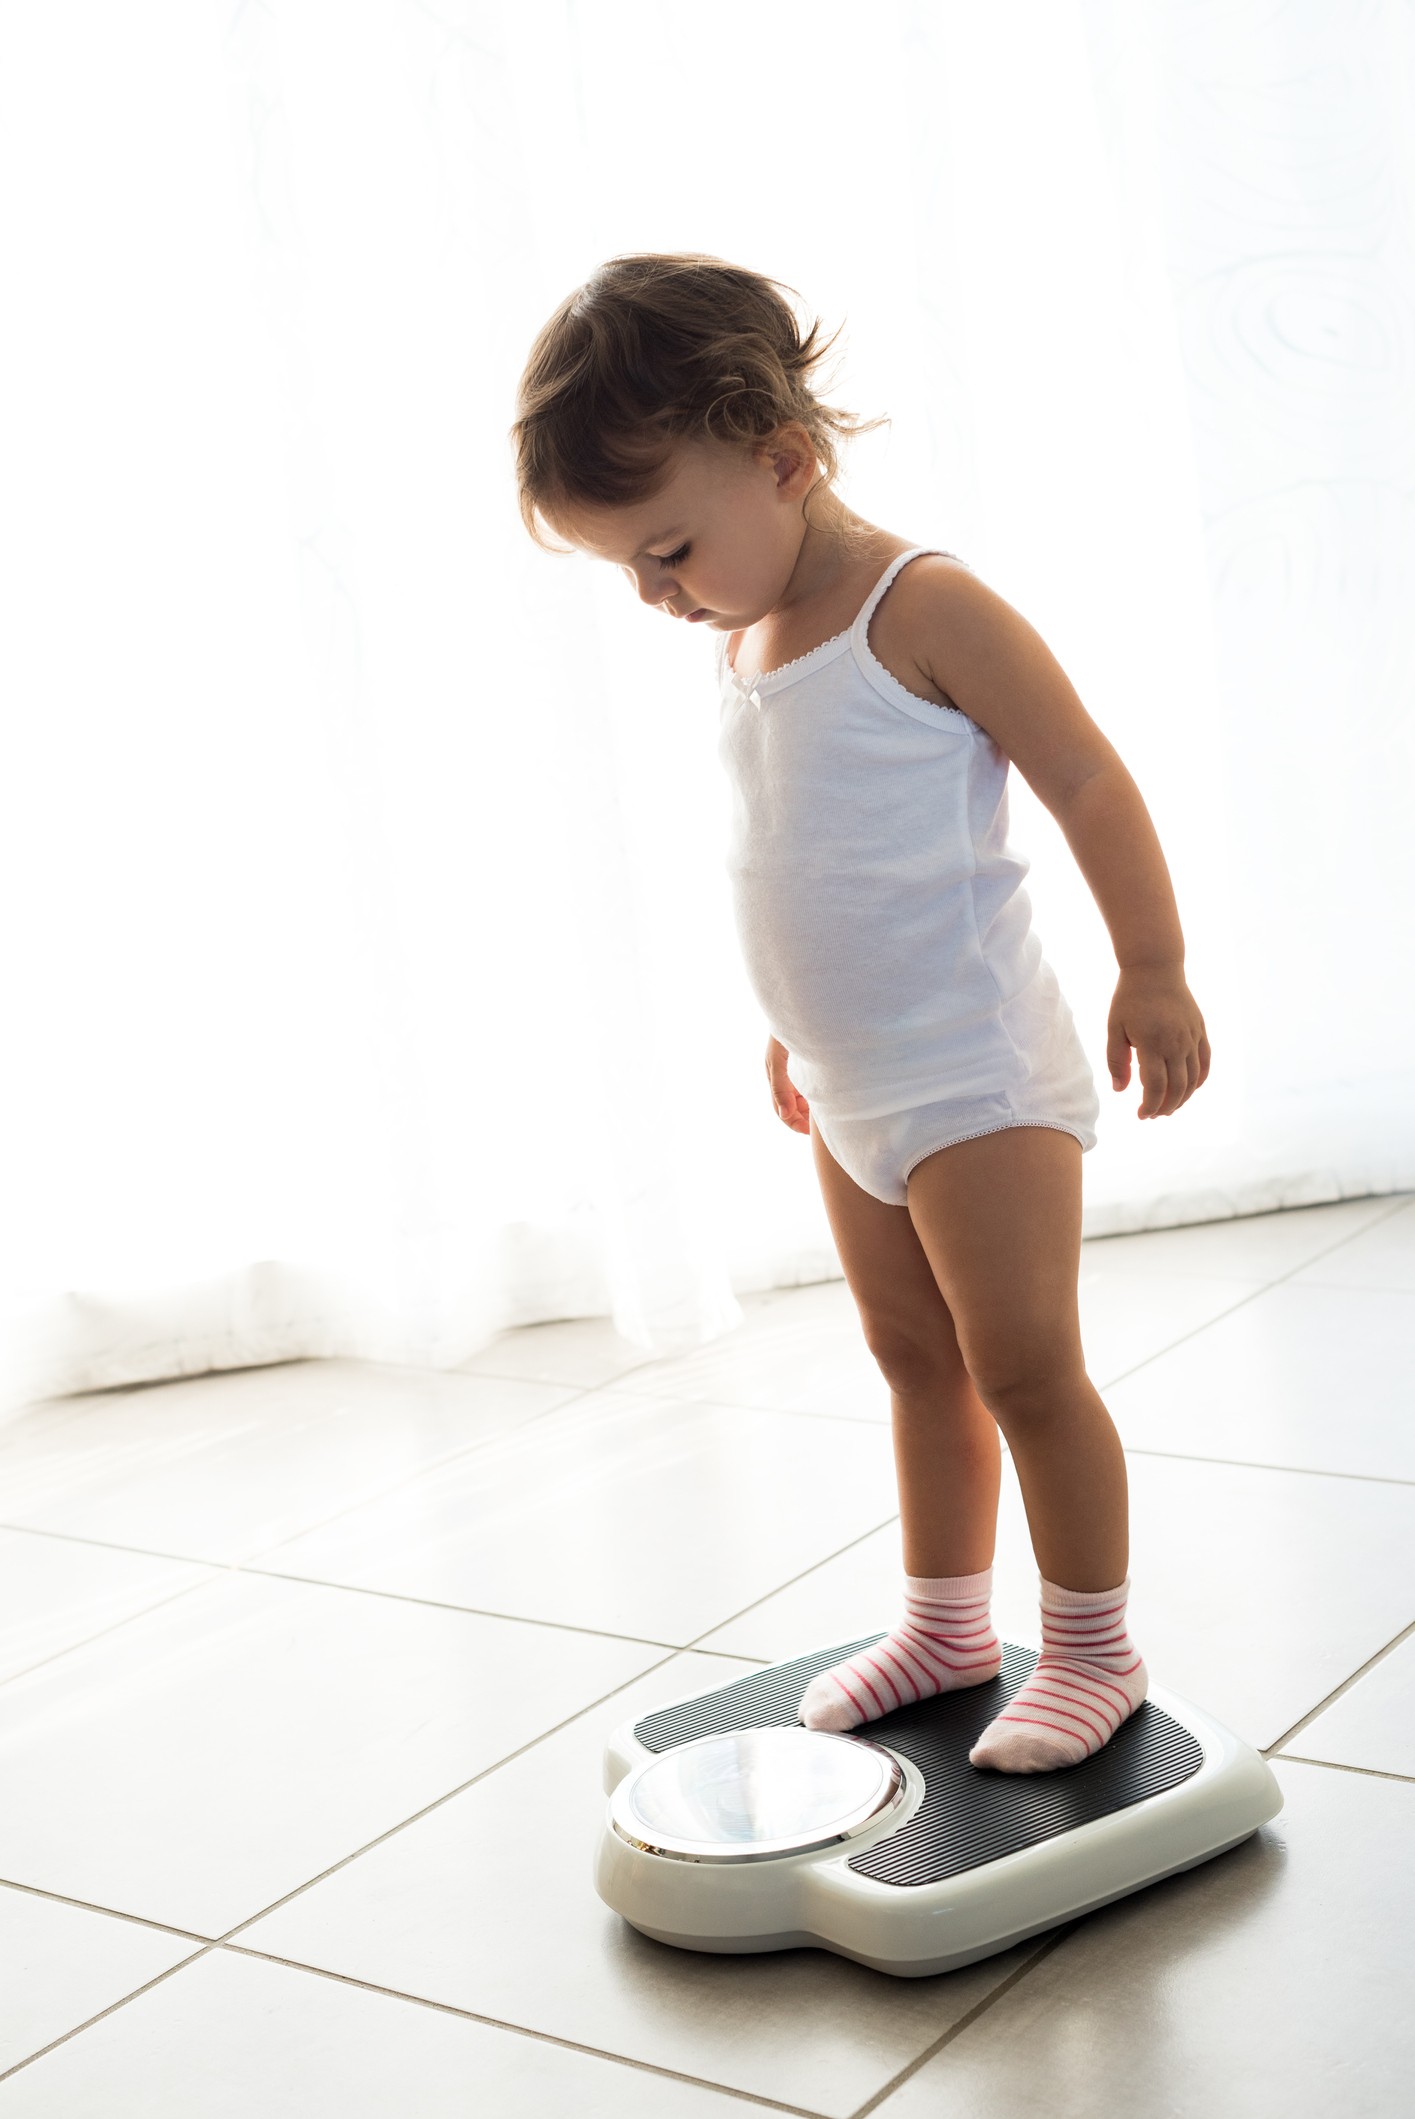 Criança sobe na balança para medir o peso (Foto: Getty Image)